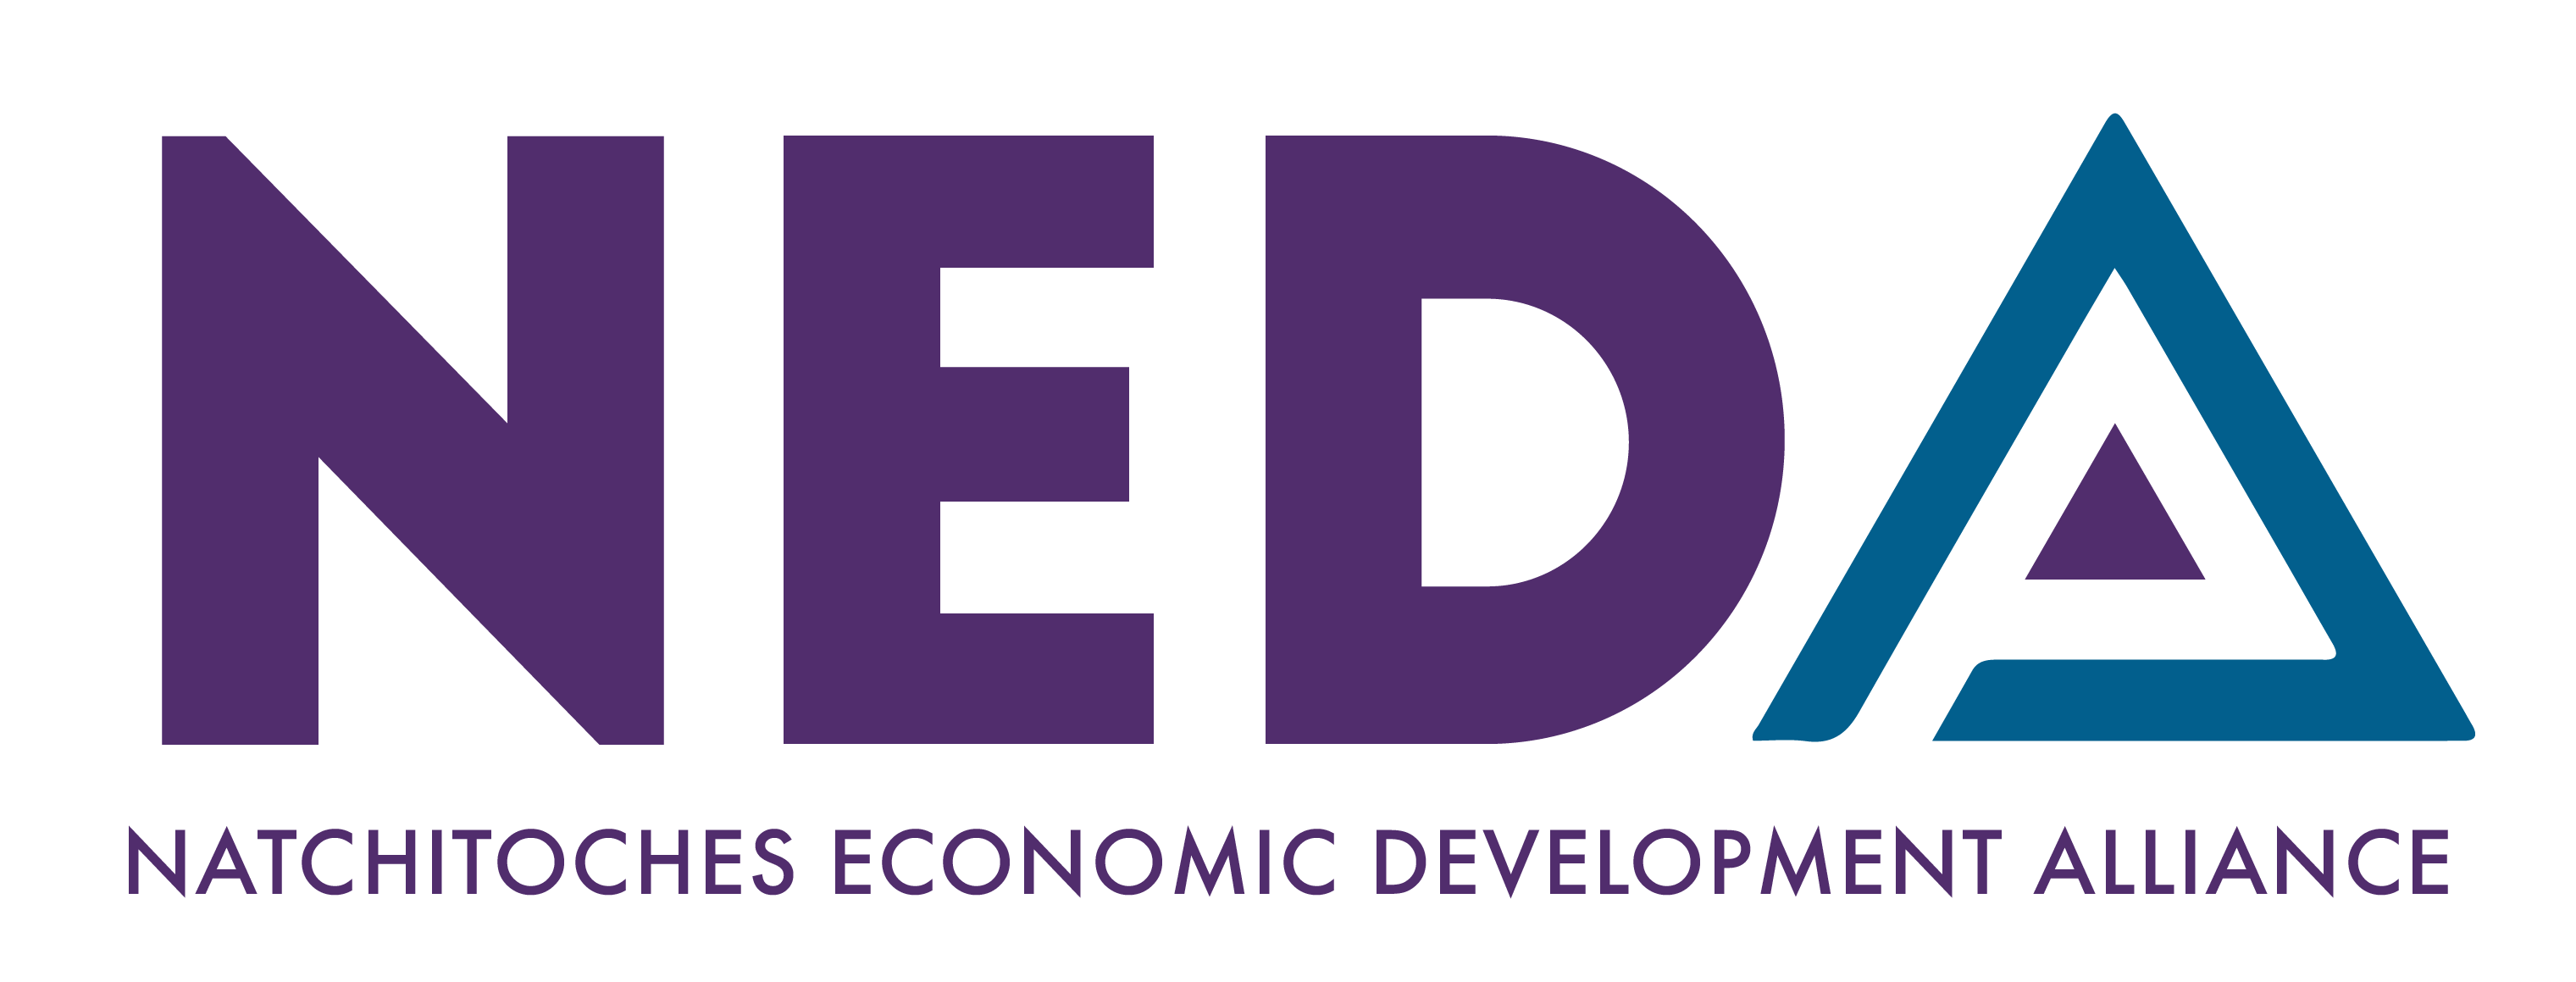 Natchitoches Economic Development Alliance